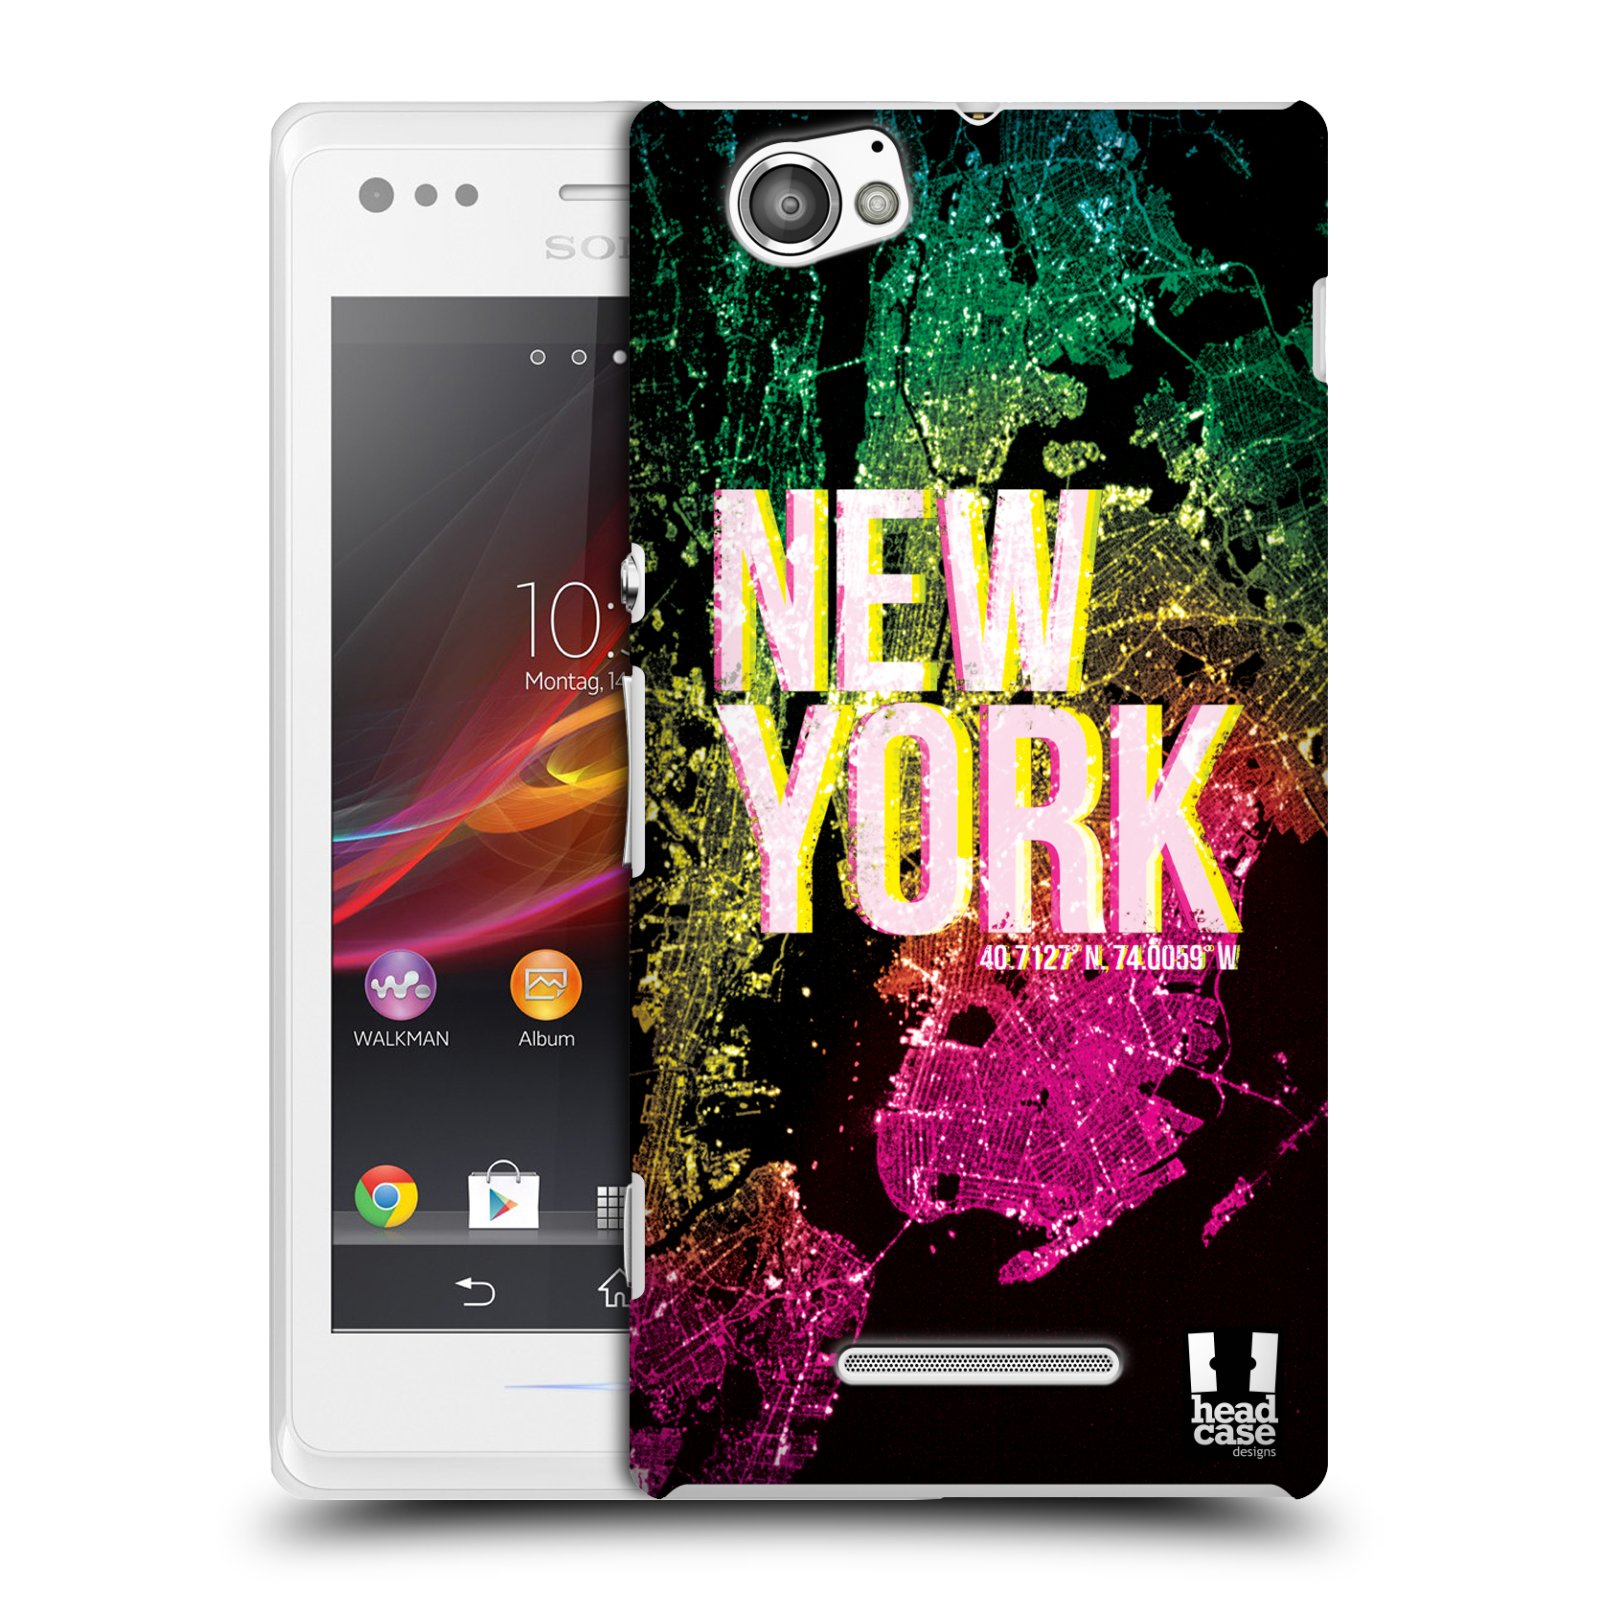 HEAD CASE plastový obal na mobil Sony Xperia M vzor Světla známých měst, Satelitní snímky USA, NEW YORK